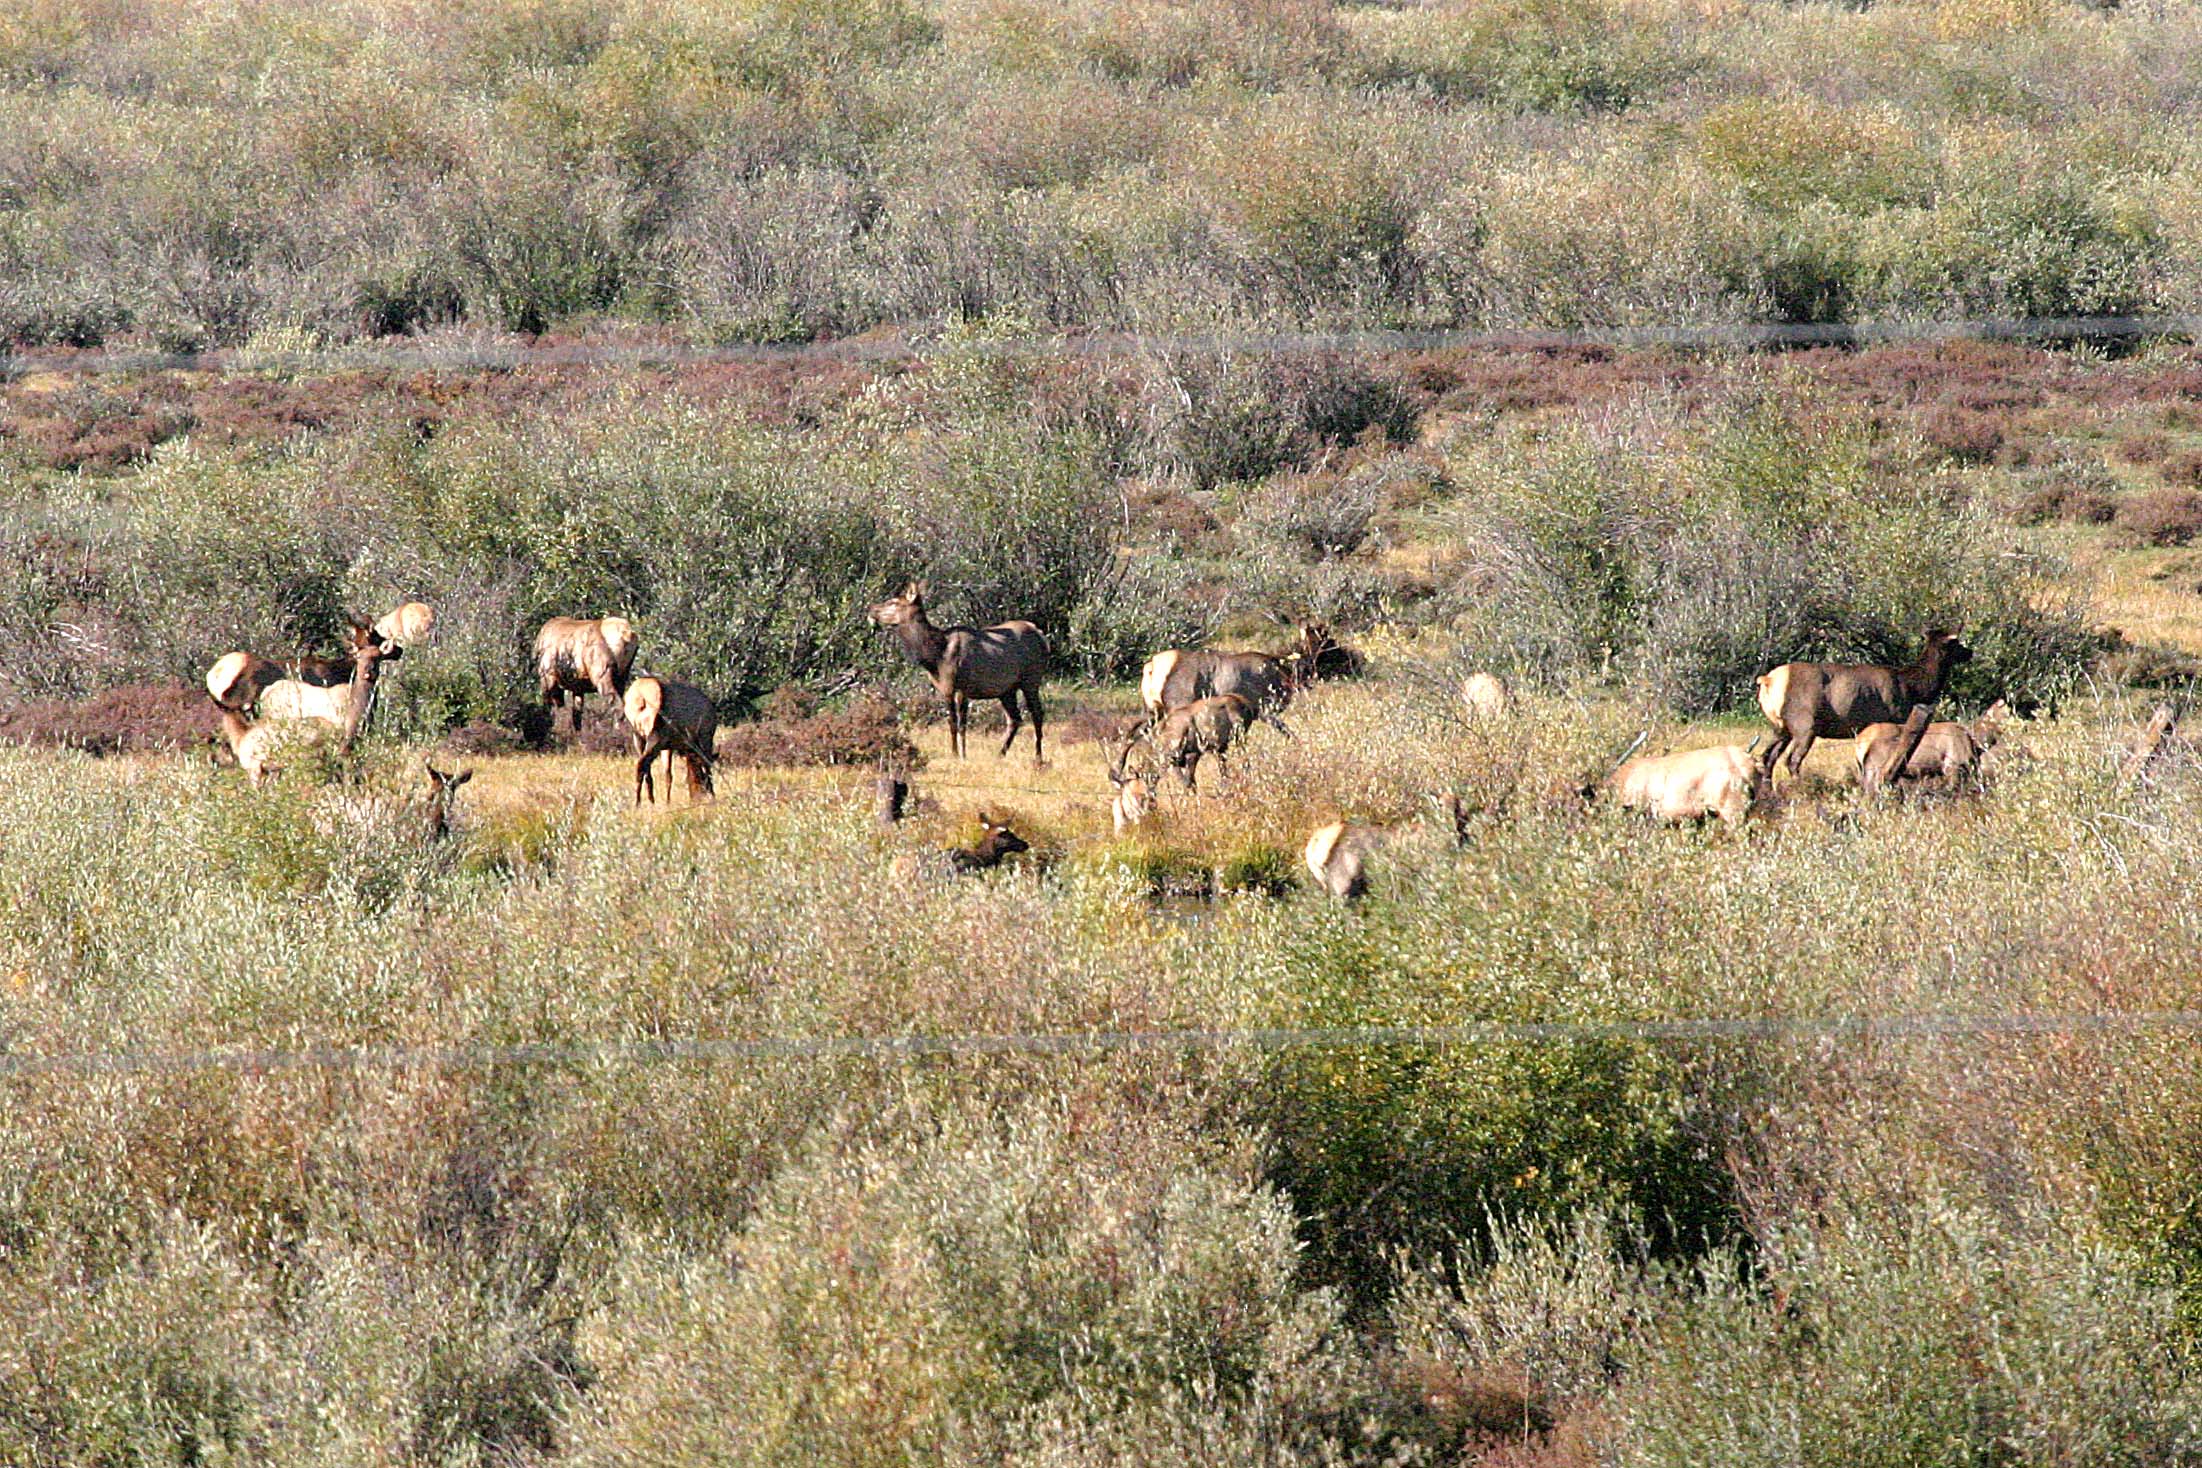 Elk in the back field